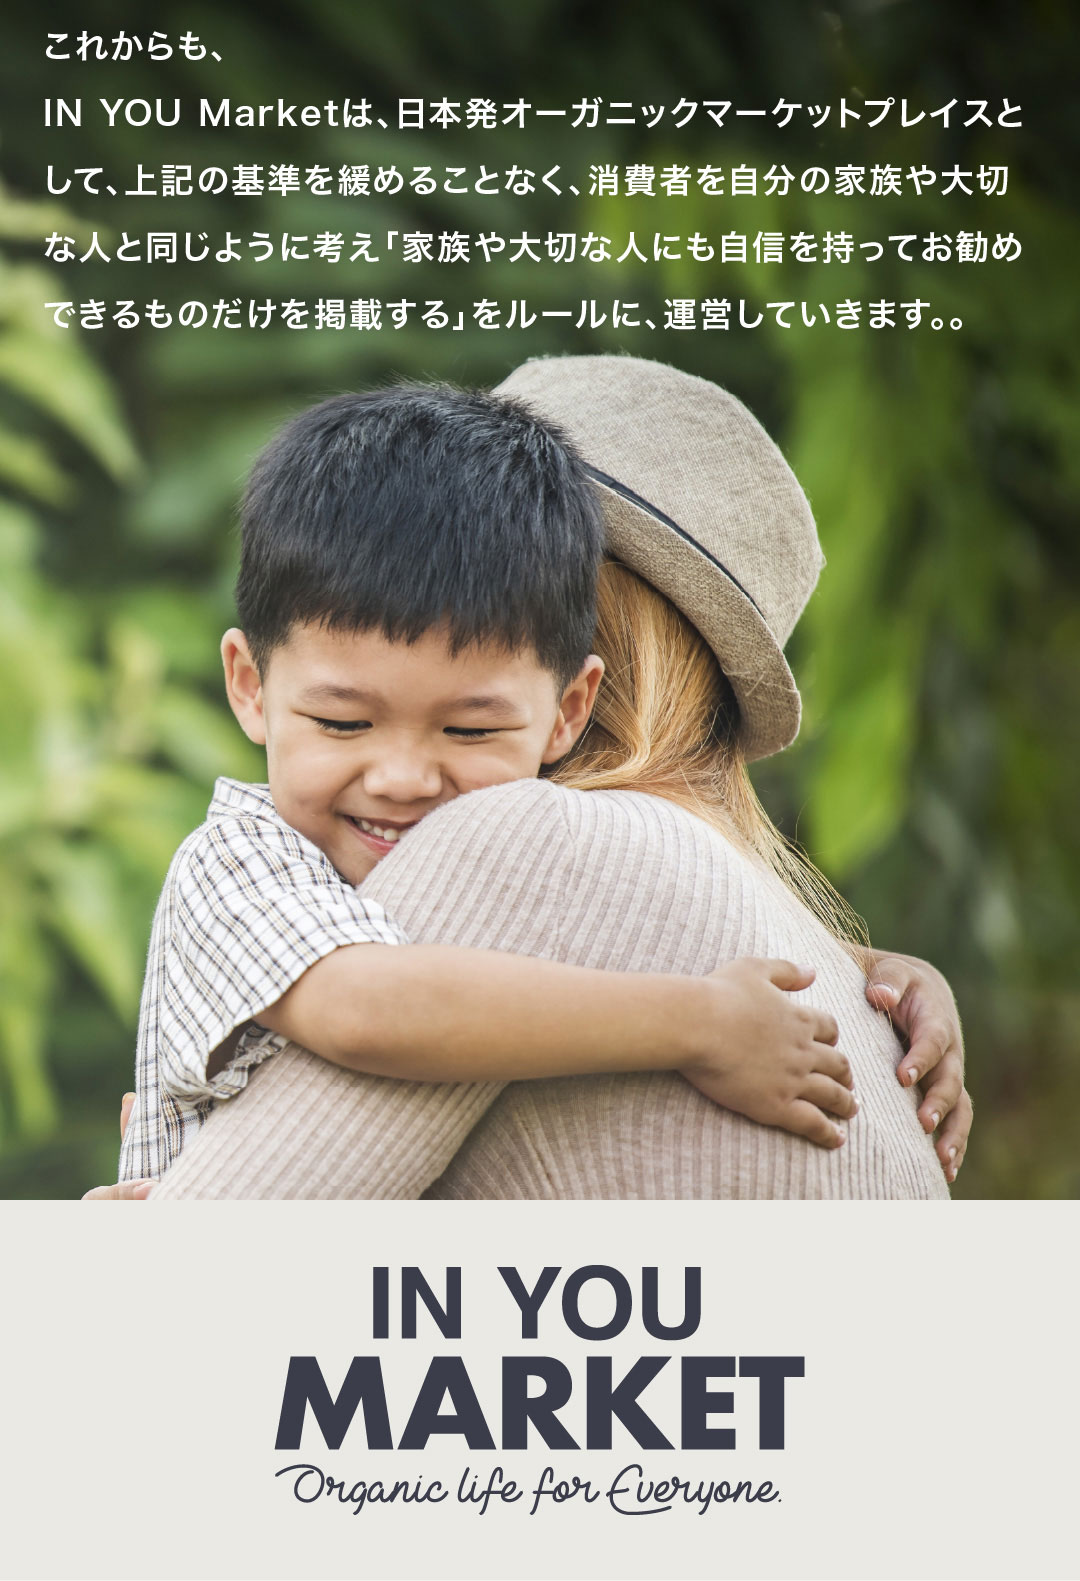 これからも、IN YOU Marketは、日本発オーガニックマーケットプレイスとして、上記の基準を緩めることなく、消費者を自分の家族や大切な人と同じように考え「家族や大切な人にも自信を持ってお勧めできるものだけを掲載する」をルールに、運営していきます。